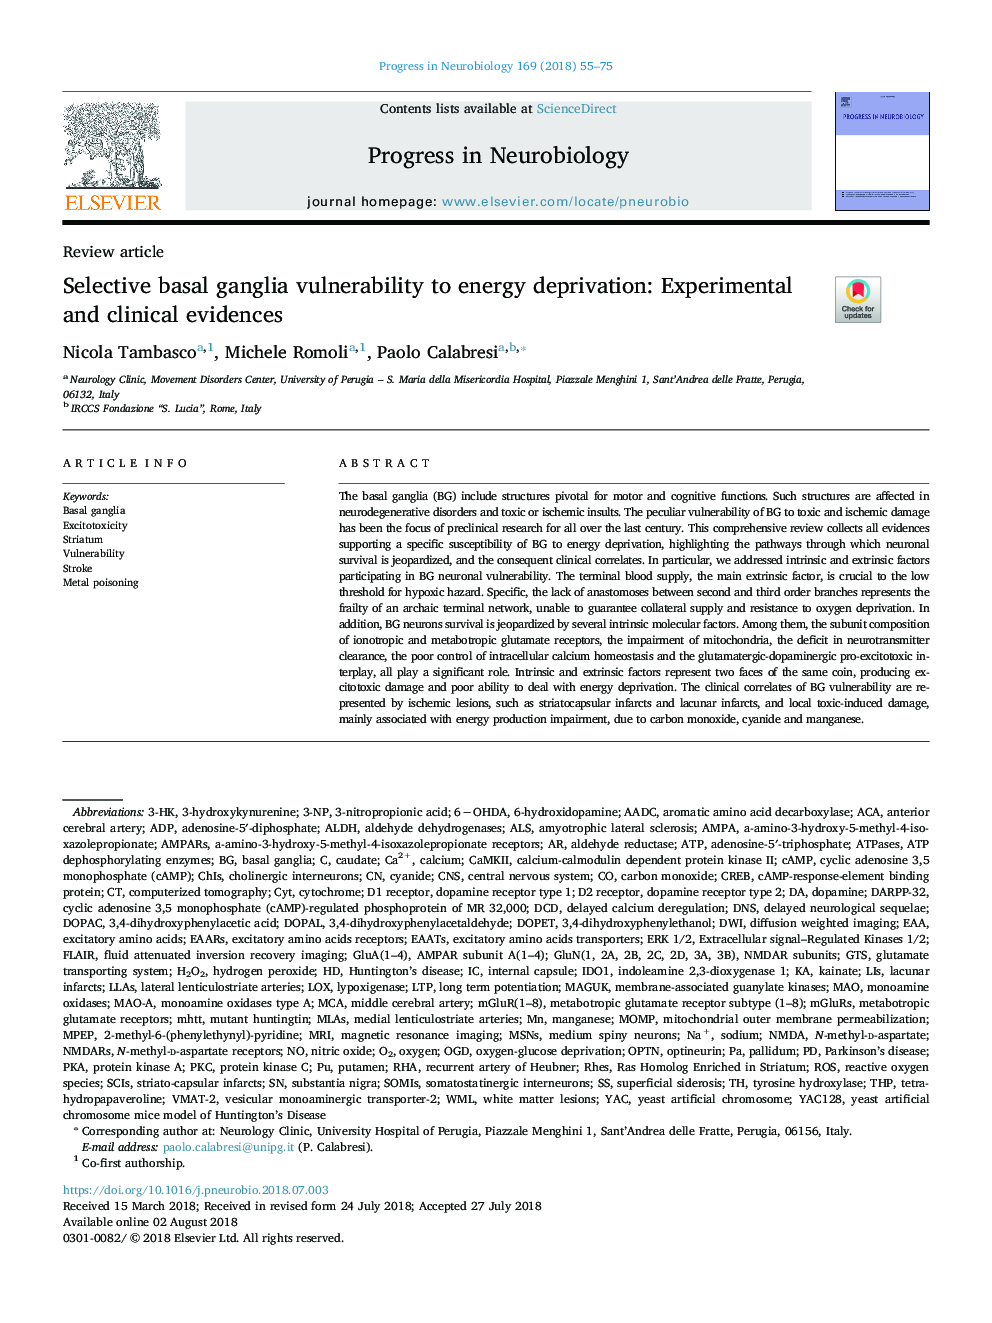 آسیب پذیری جدی گانگلیوی پایه به محرومیت انرژی: شواهد تجربی و بالینی